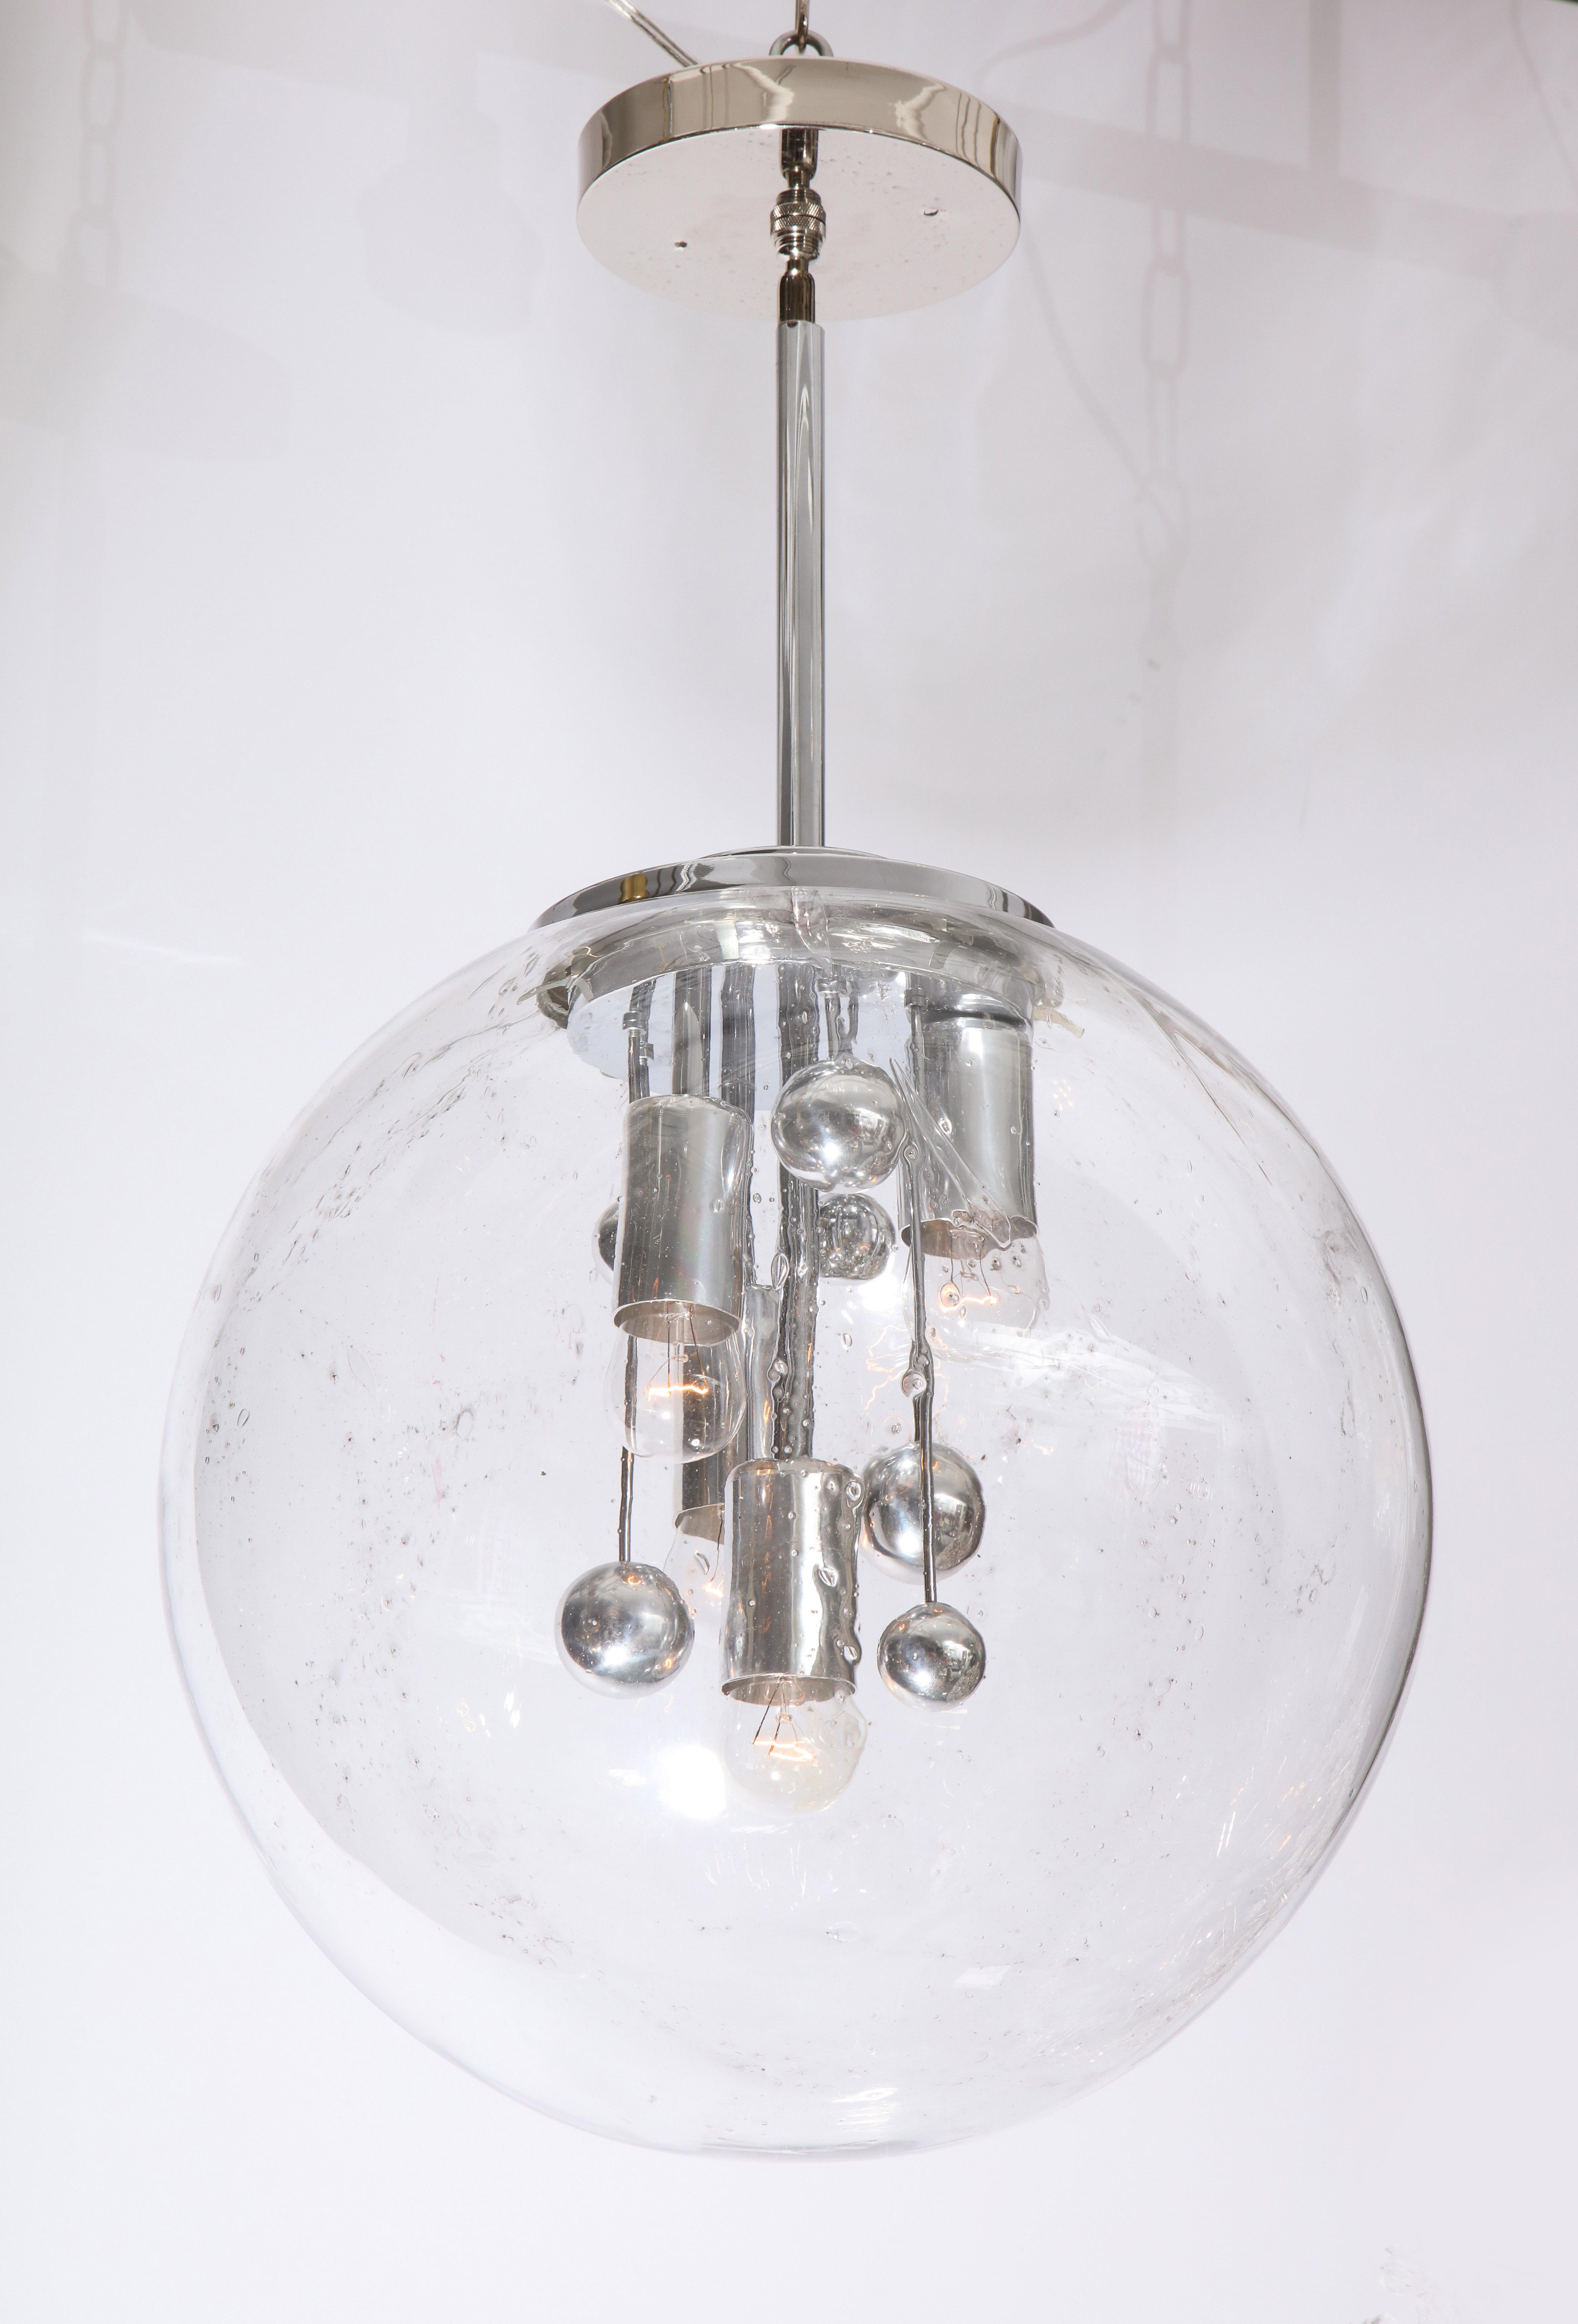 Grande suspension spoutnik en verre de Murano par Doria lighting company.
Le grand globe en verre est subtilement veiné de gris et il a été récemment recâblé pour les États-Unis
avec quatre prises de courant standard.
La hauteur totale est de 28